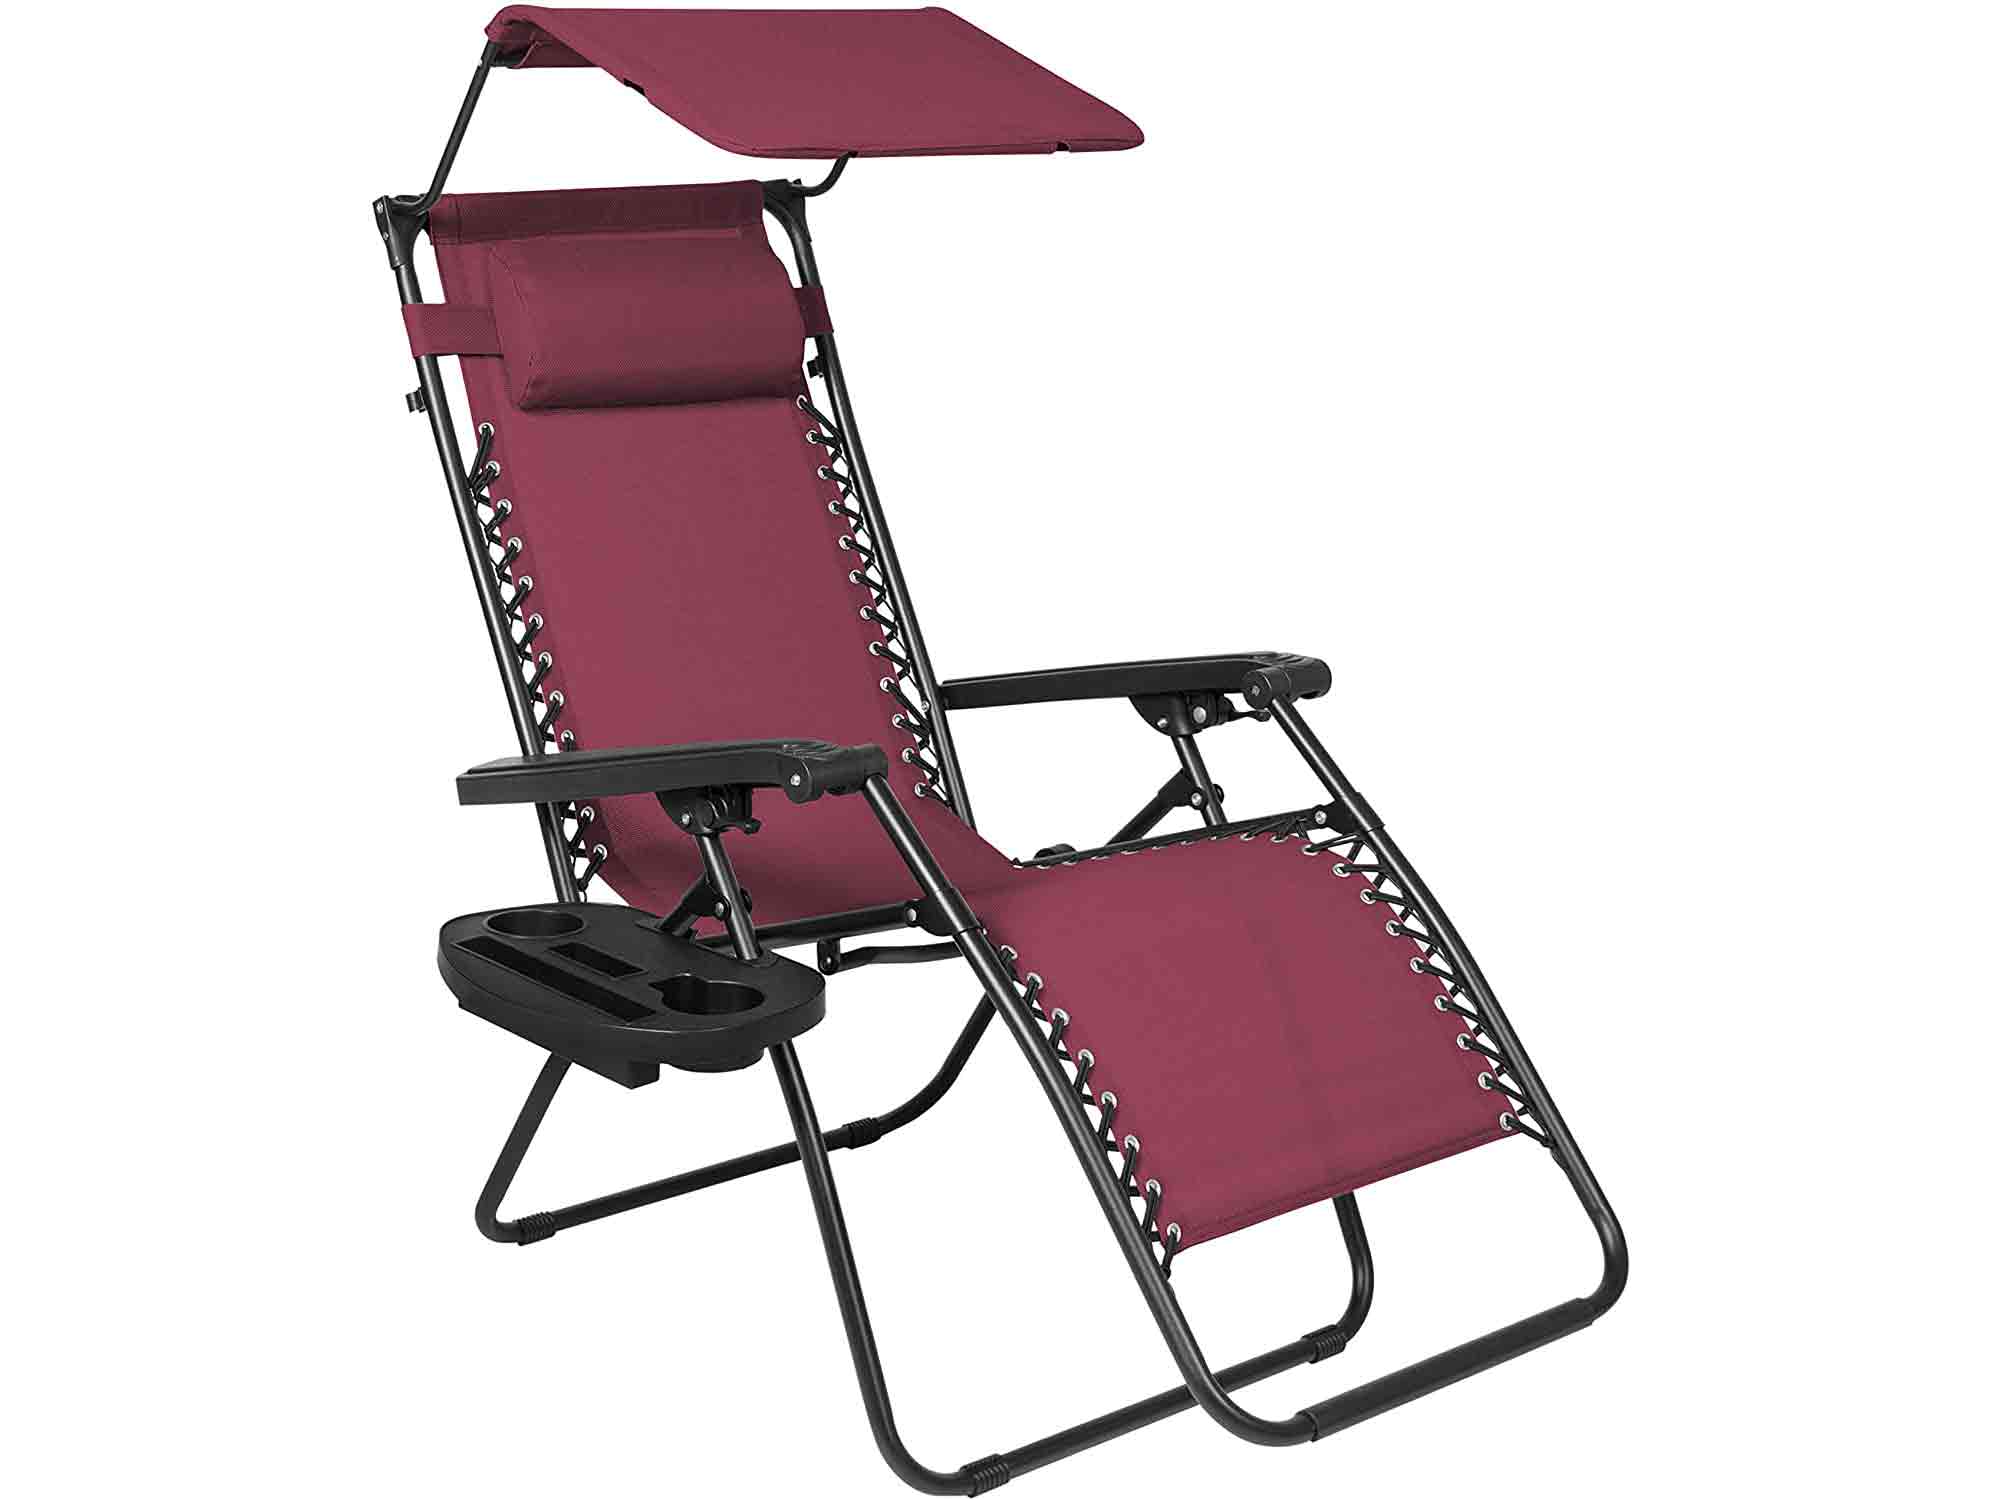 Shade chair